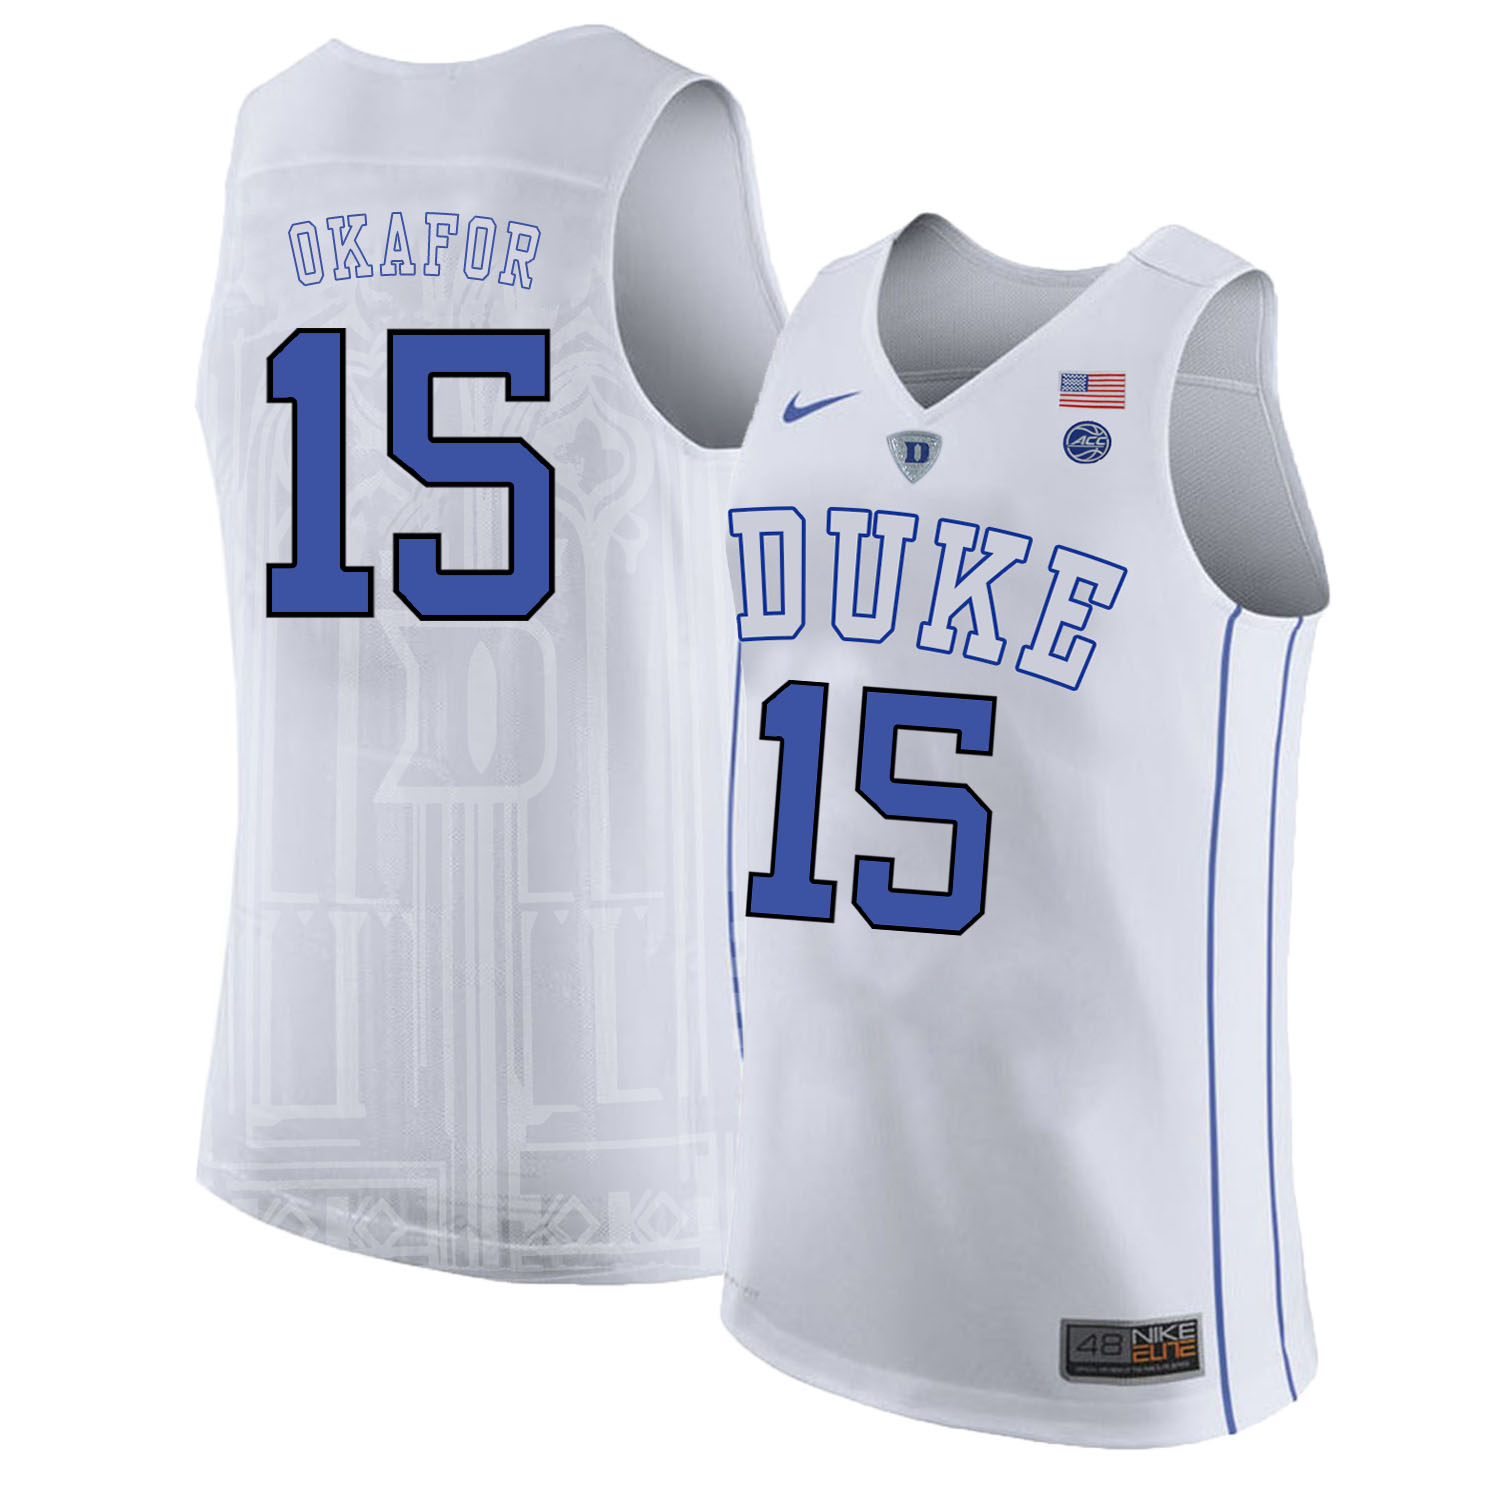 Duke Blue Devils 15 Jahlil Okafor White College Basketball Jersey